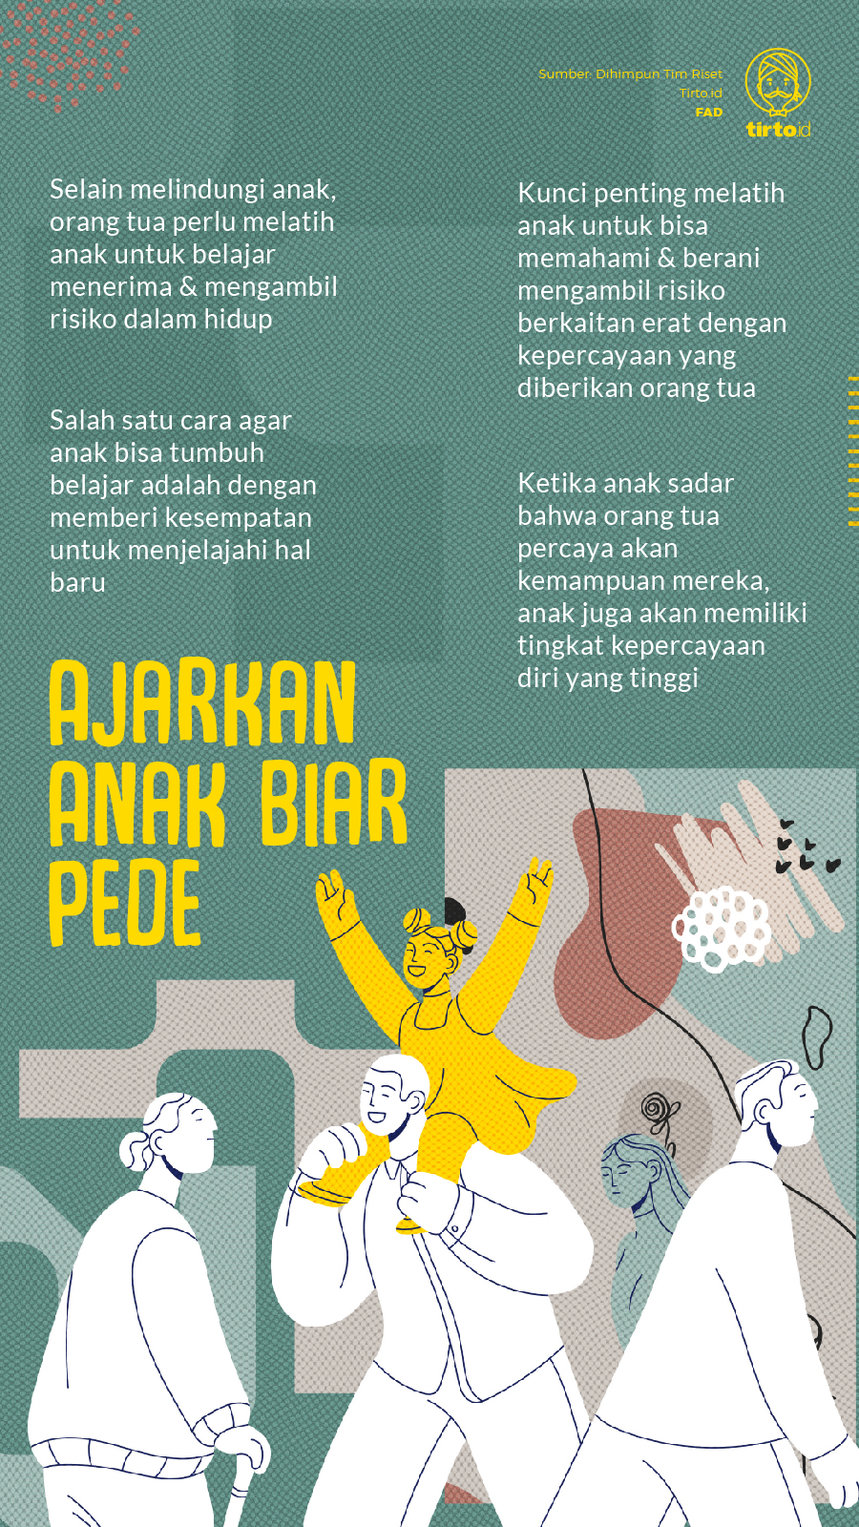 Infografik Ajarkan Anak biar Pede